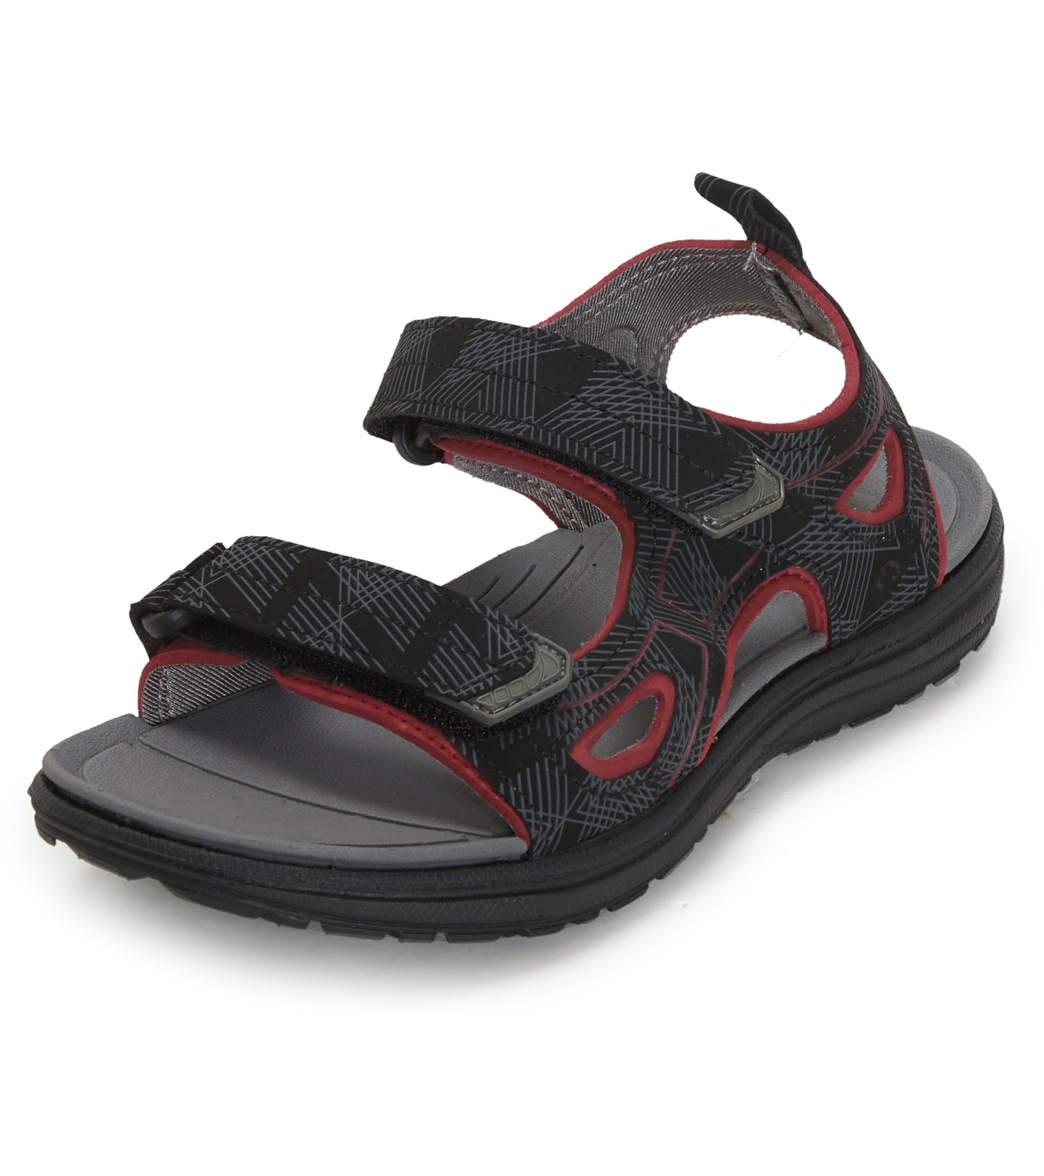 Northside Kid's Riverside Lite Sport Sandals Toddler/Little/Big Kid - Black/Red 10 - Swimoutlet.com